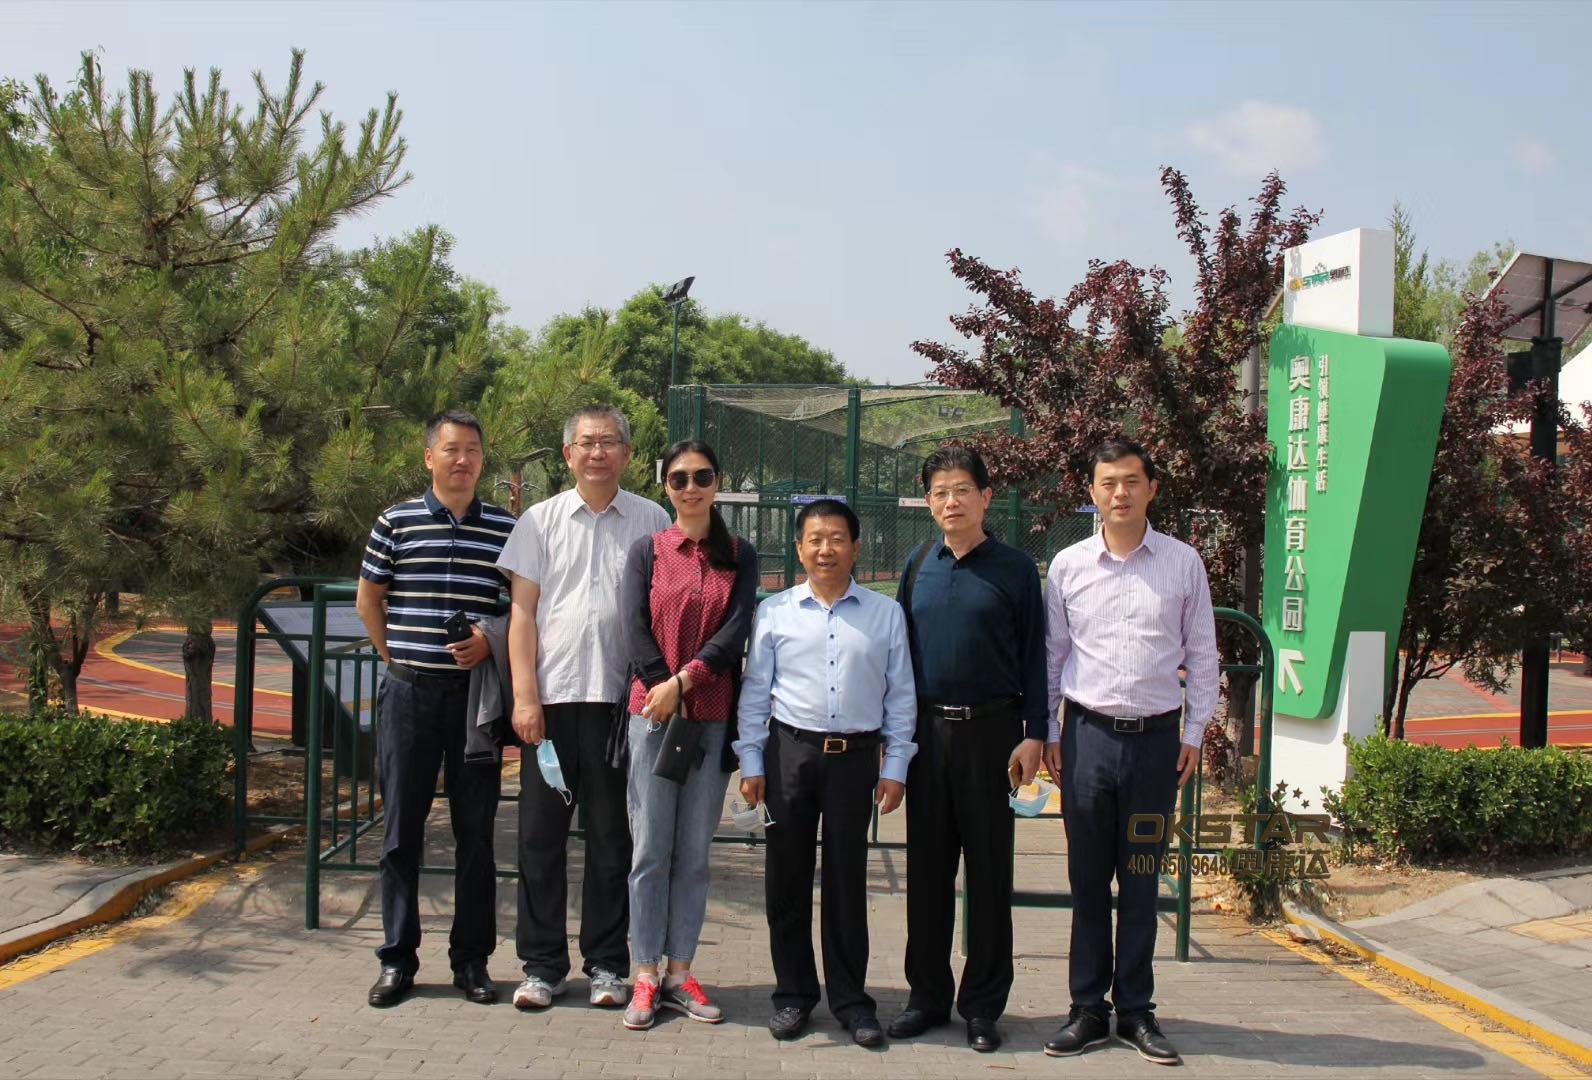 奥康达智慧体育公园，迎来北京联合大学四位知名教授莅临指导